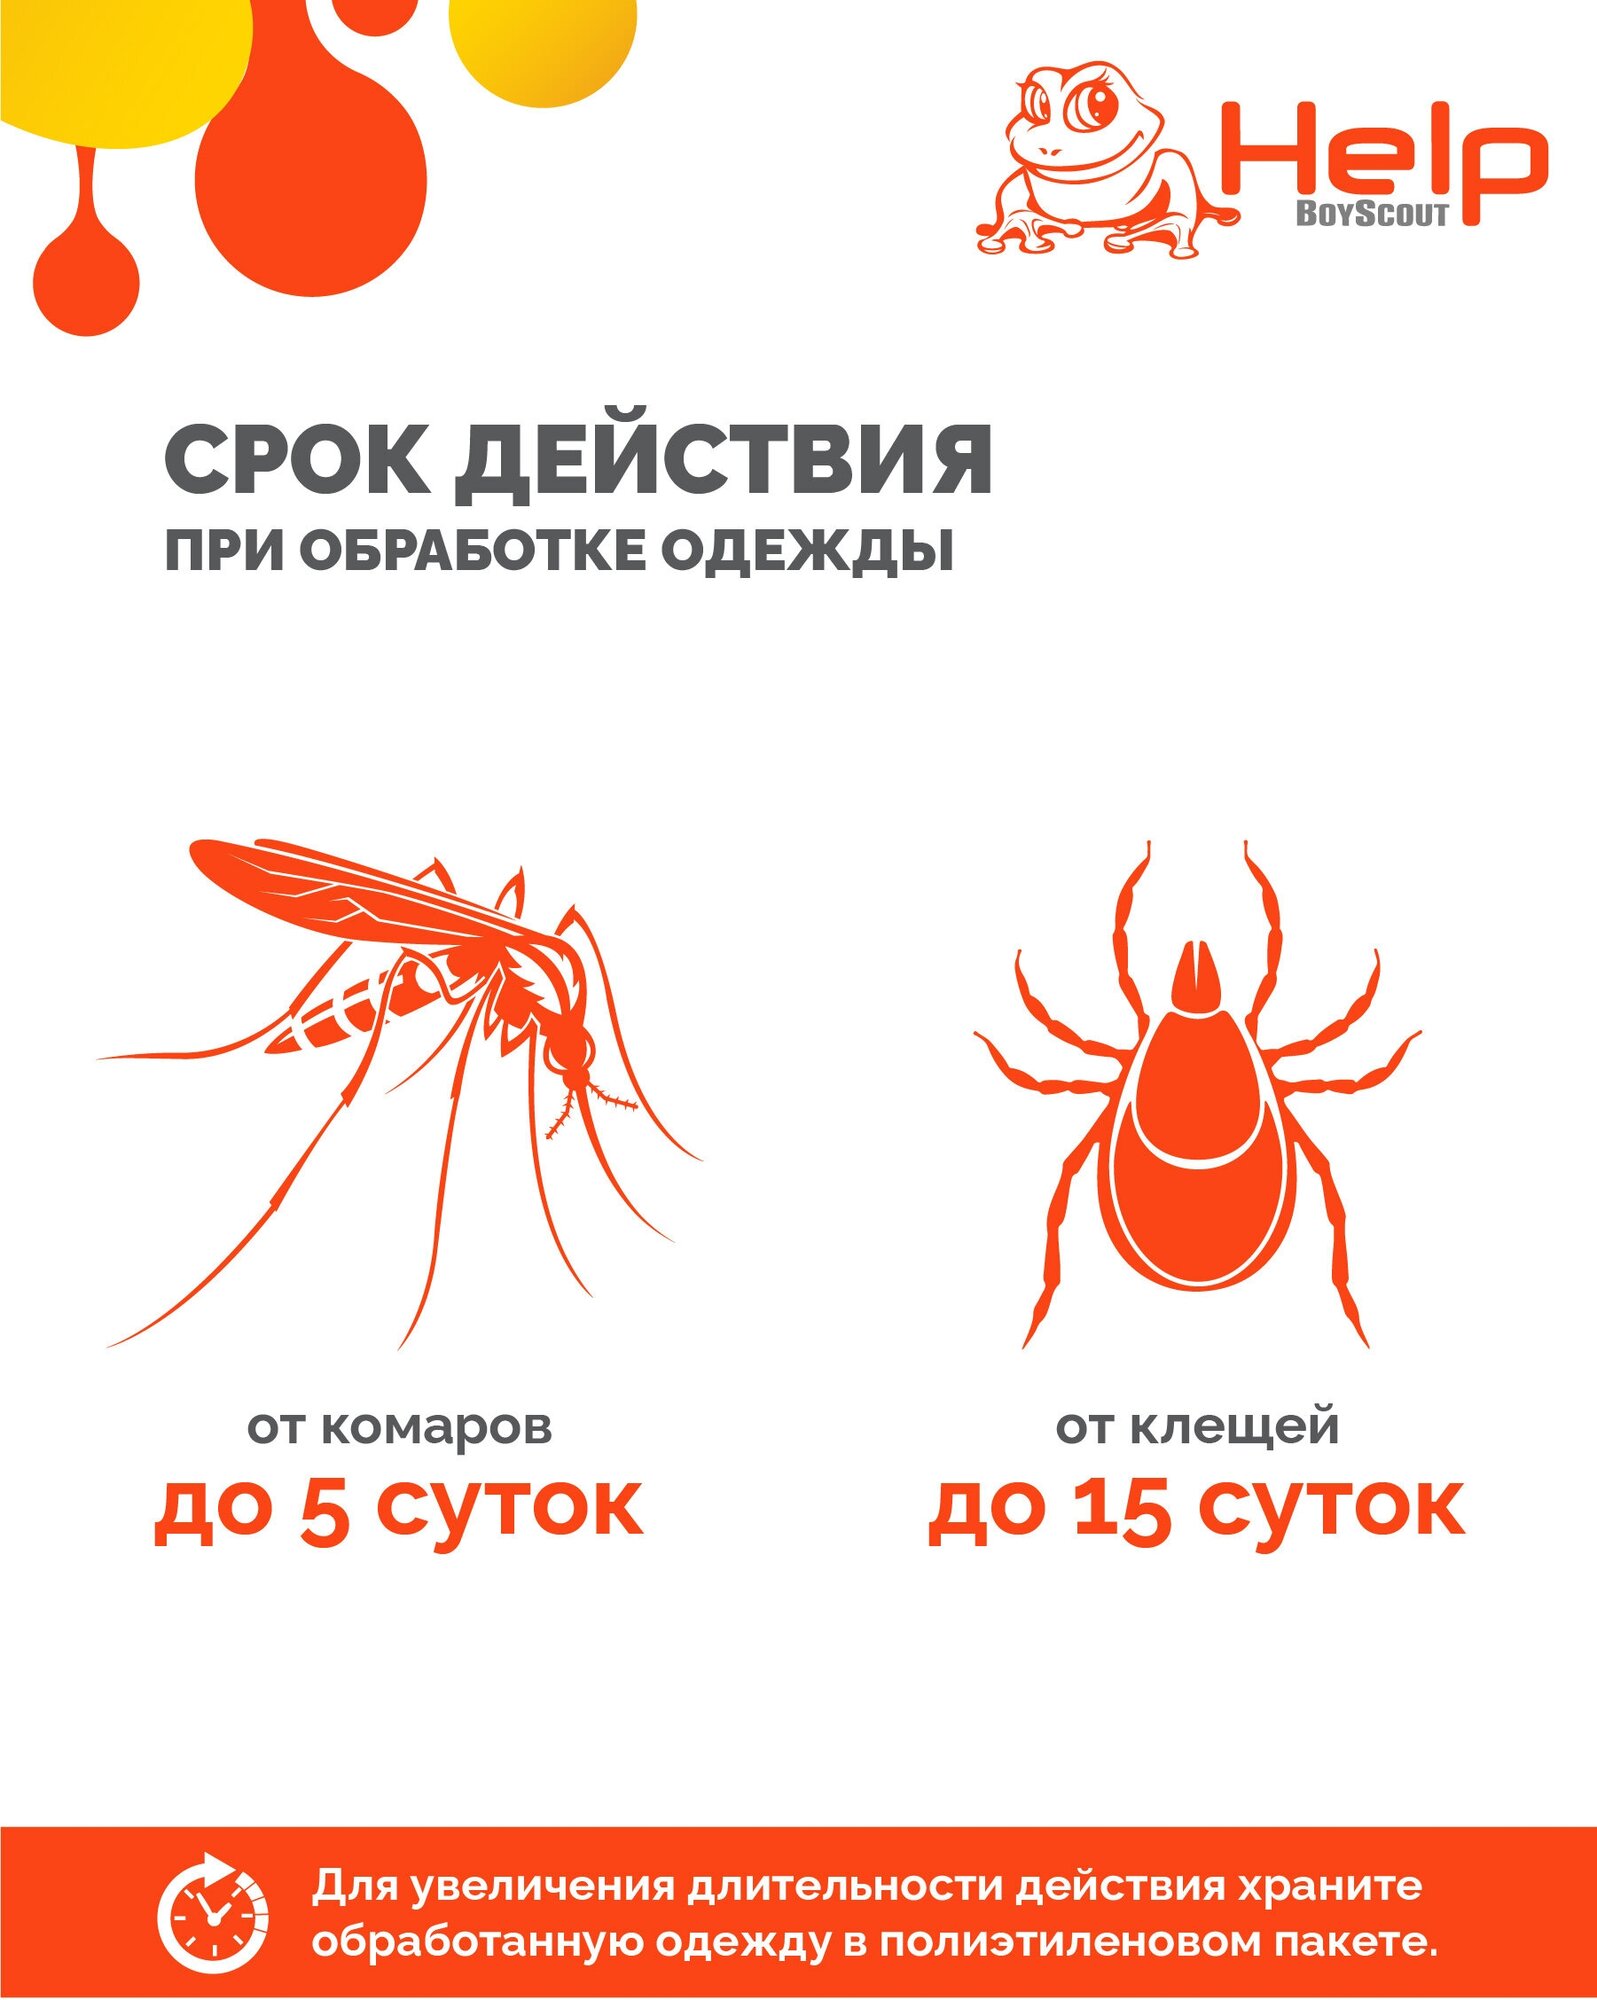 Аэрозоль Help Boyscout против клещей и комаров